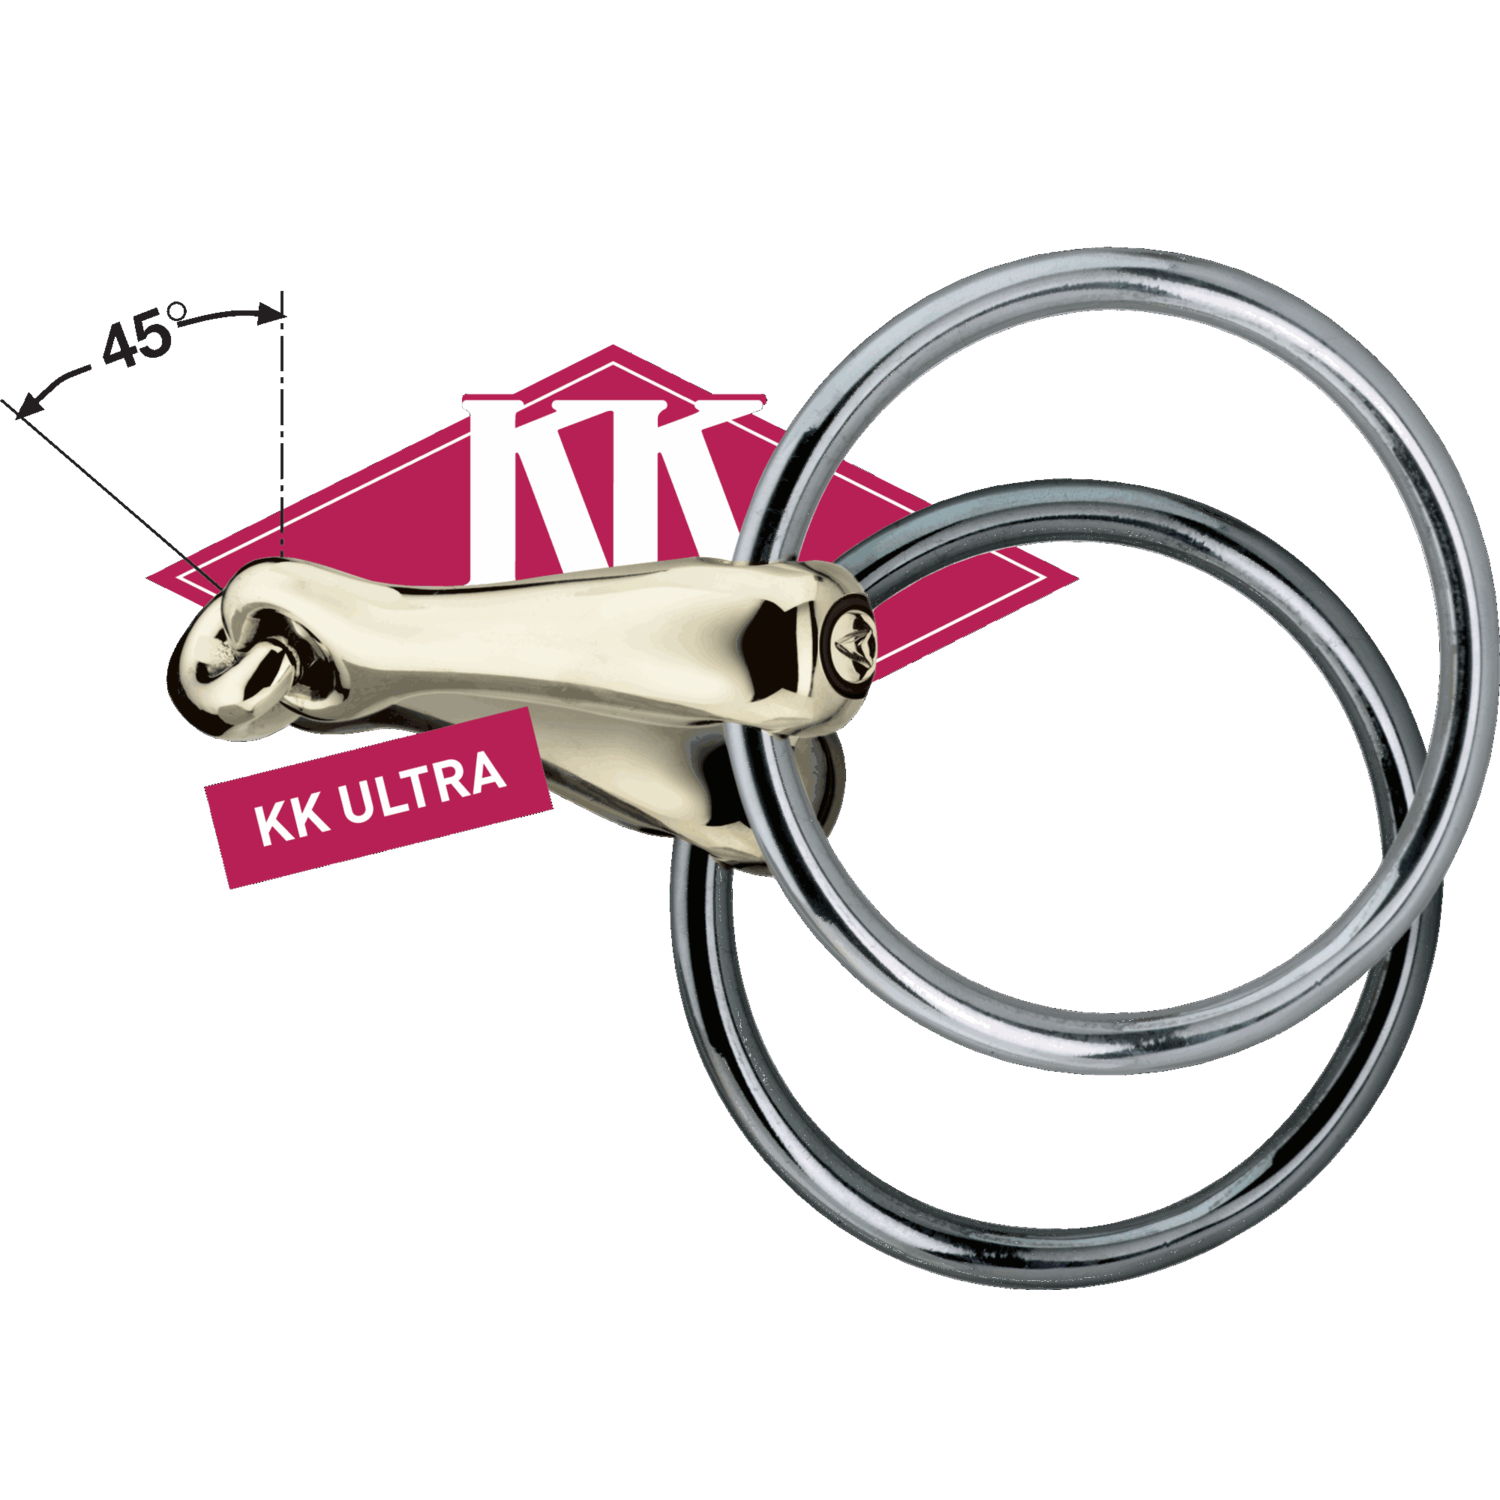 KK ULTRA Universal 18 mm - Sensogan | Logo_KK_ULTRA_mit_45_Grad_Winkel_Sensogan.png | 1700896672